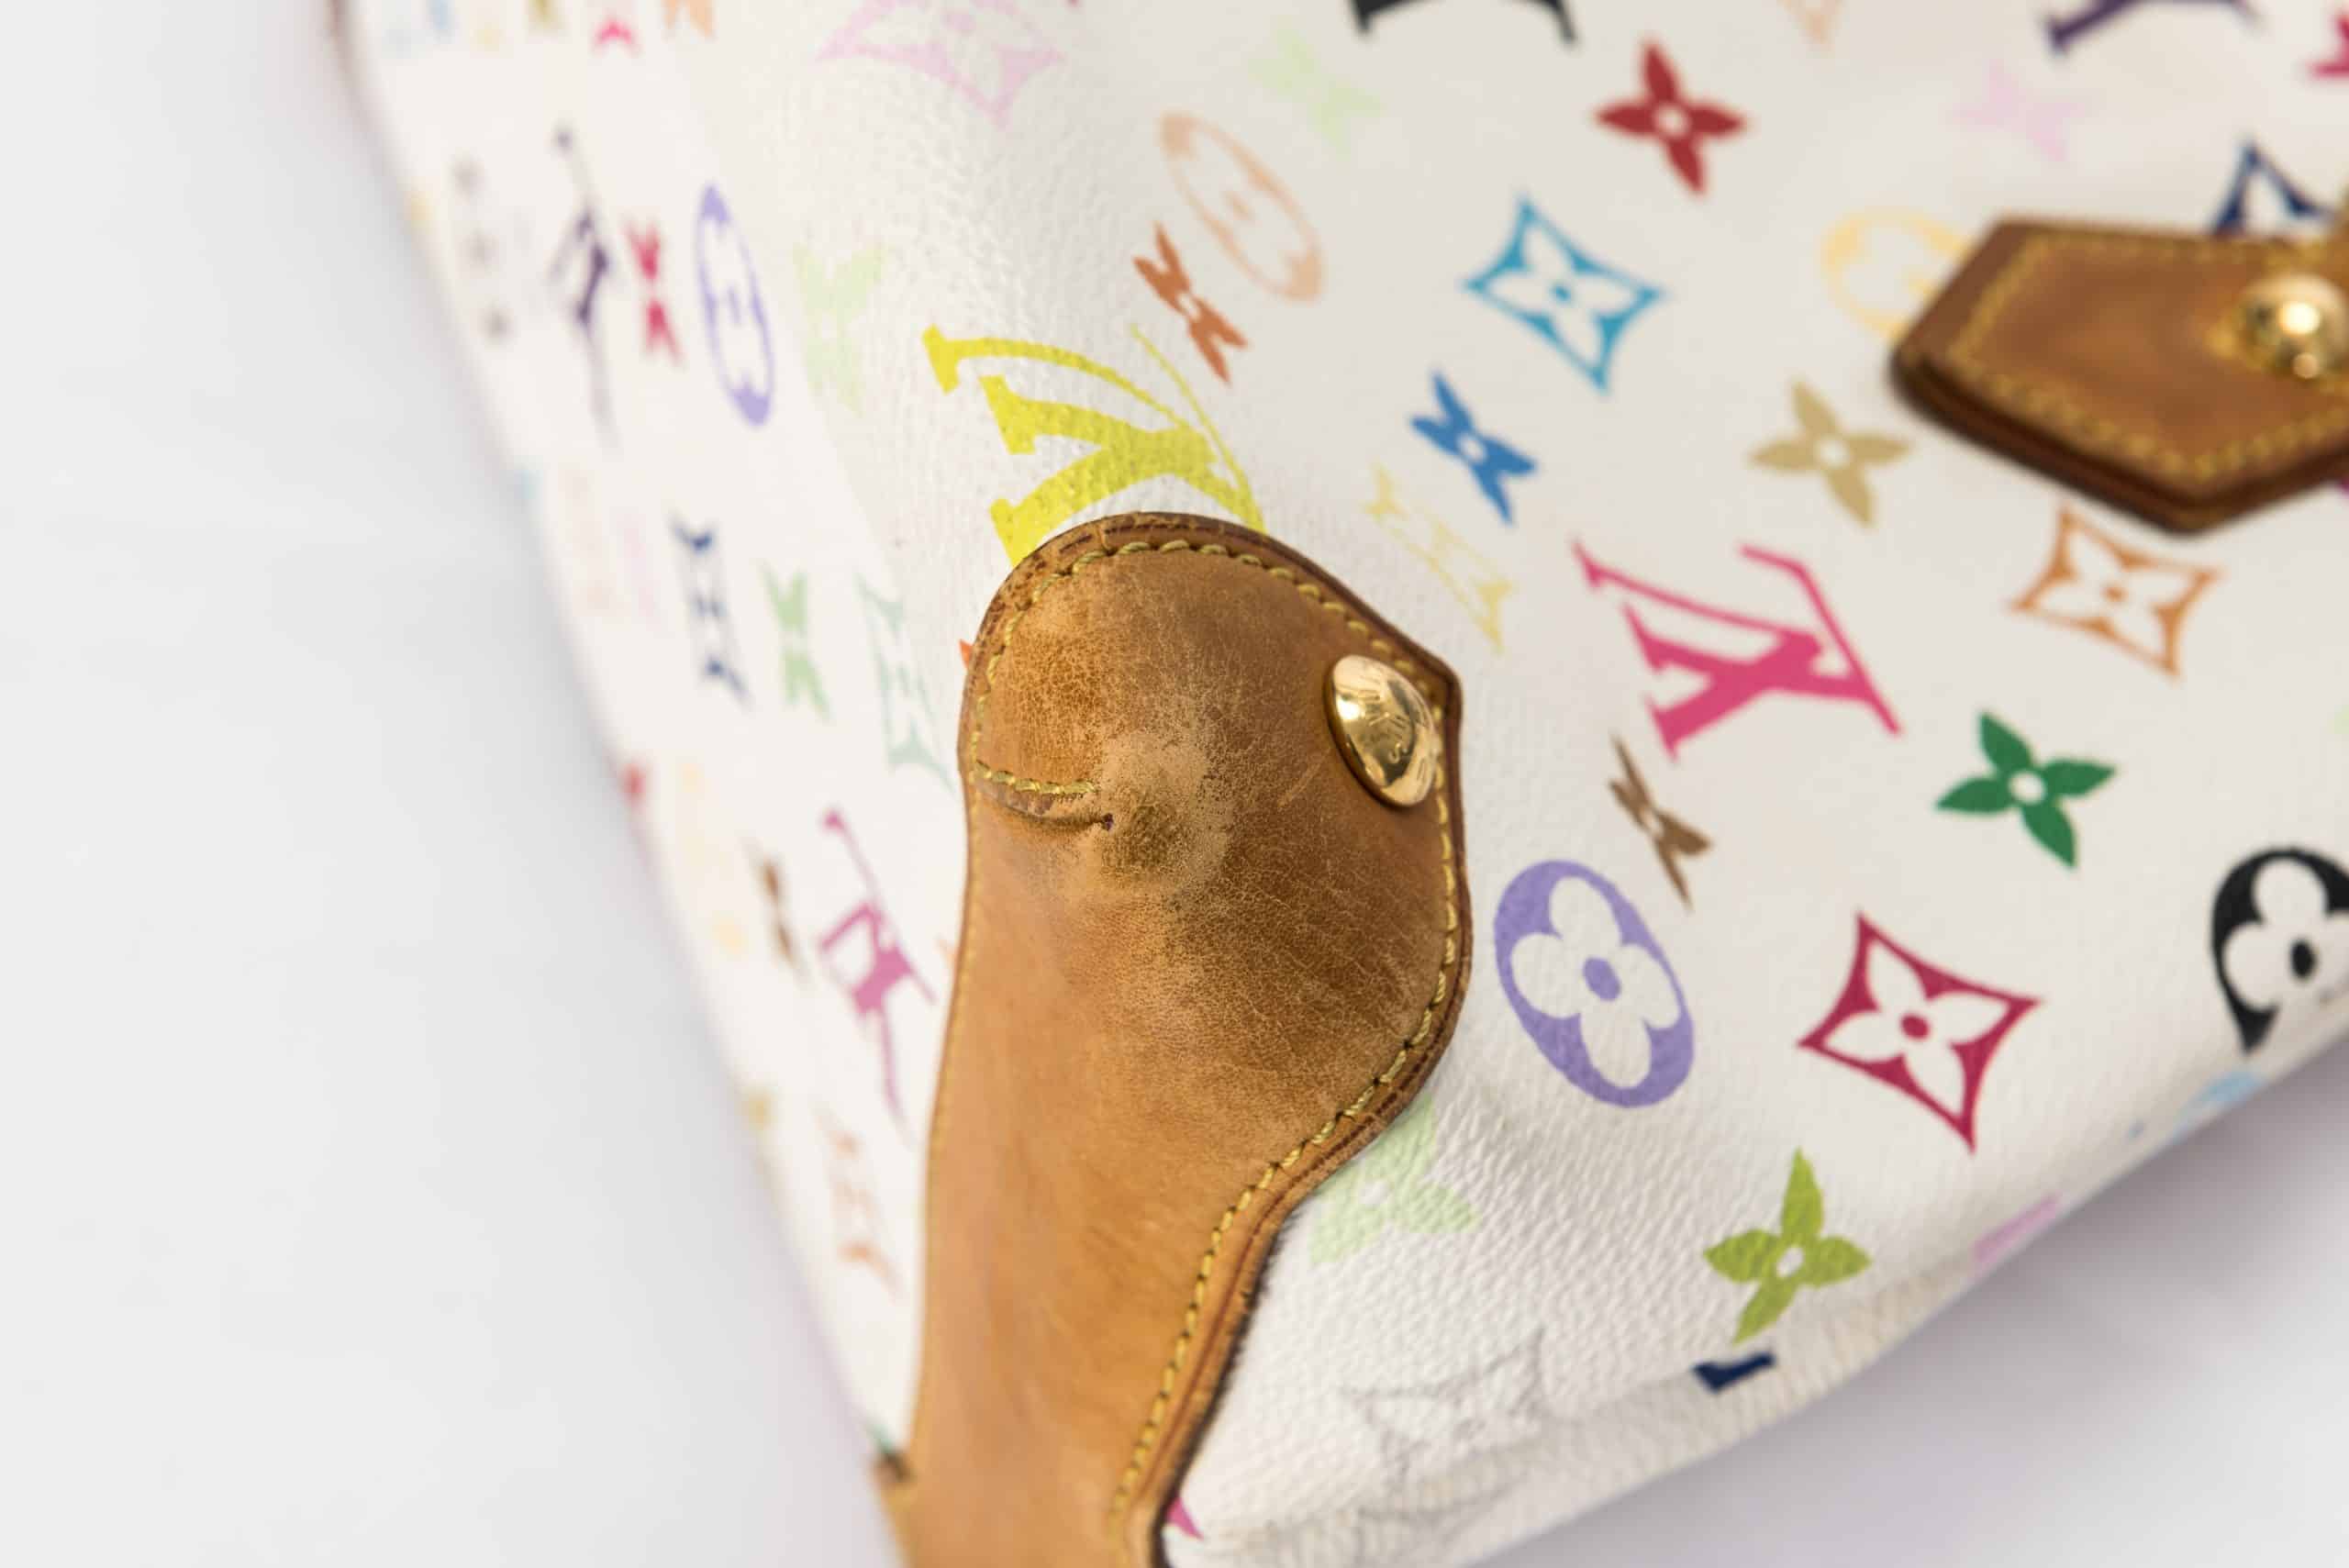 Louis Vuitton Audra Handbag Monogram Multicolor Multicolor 2394051